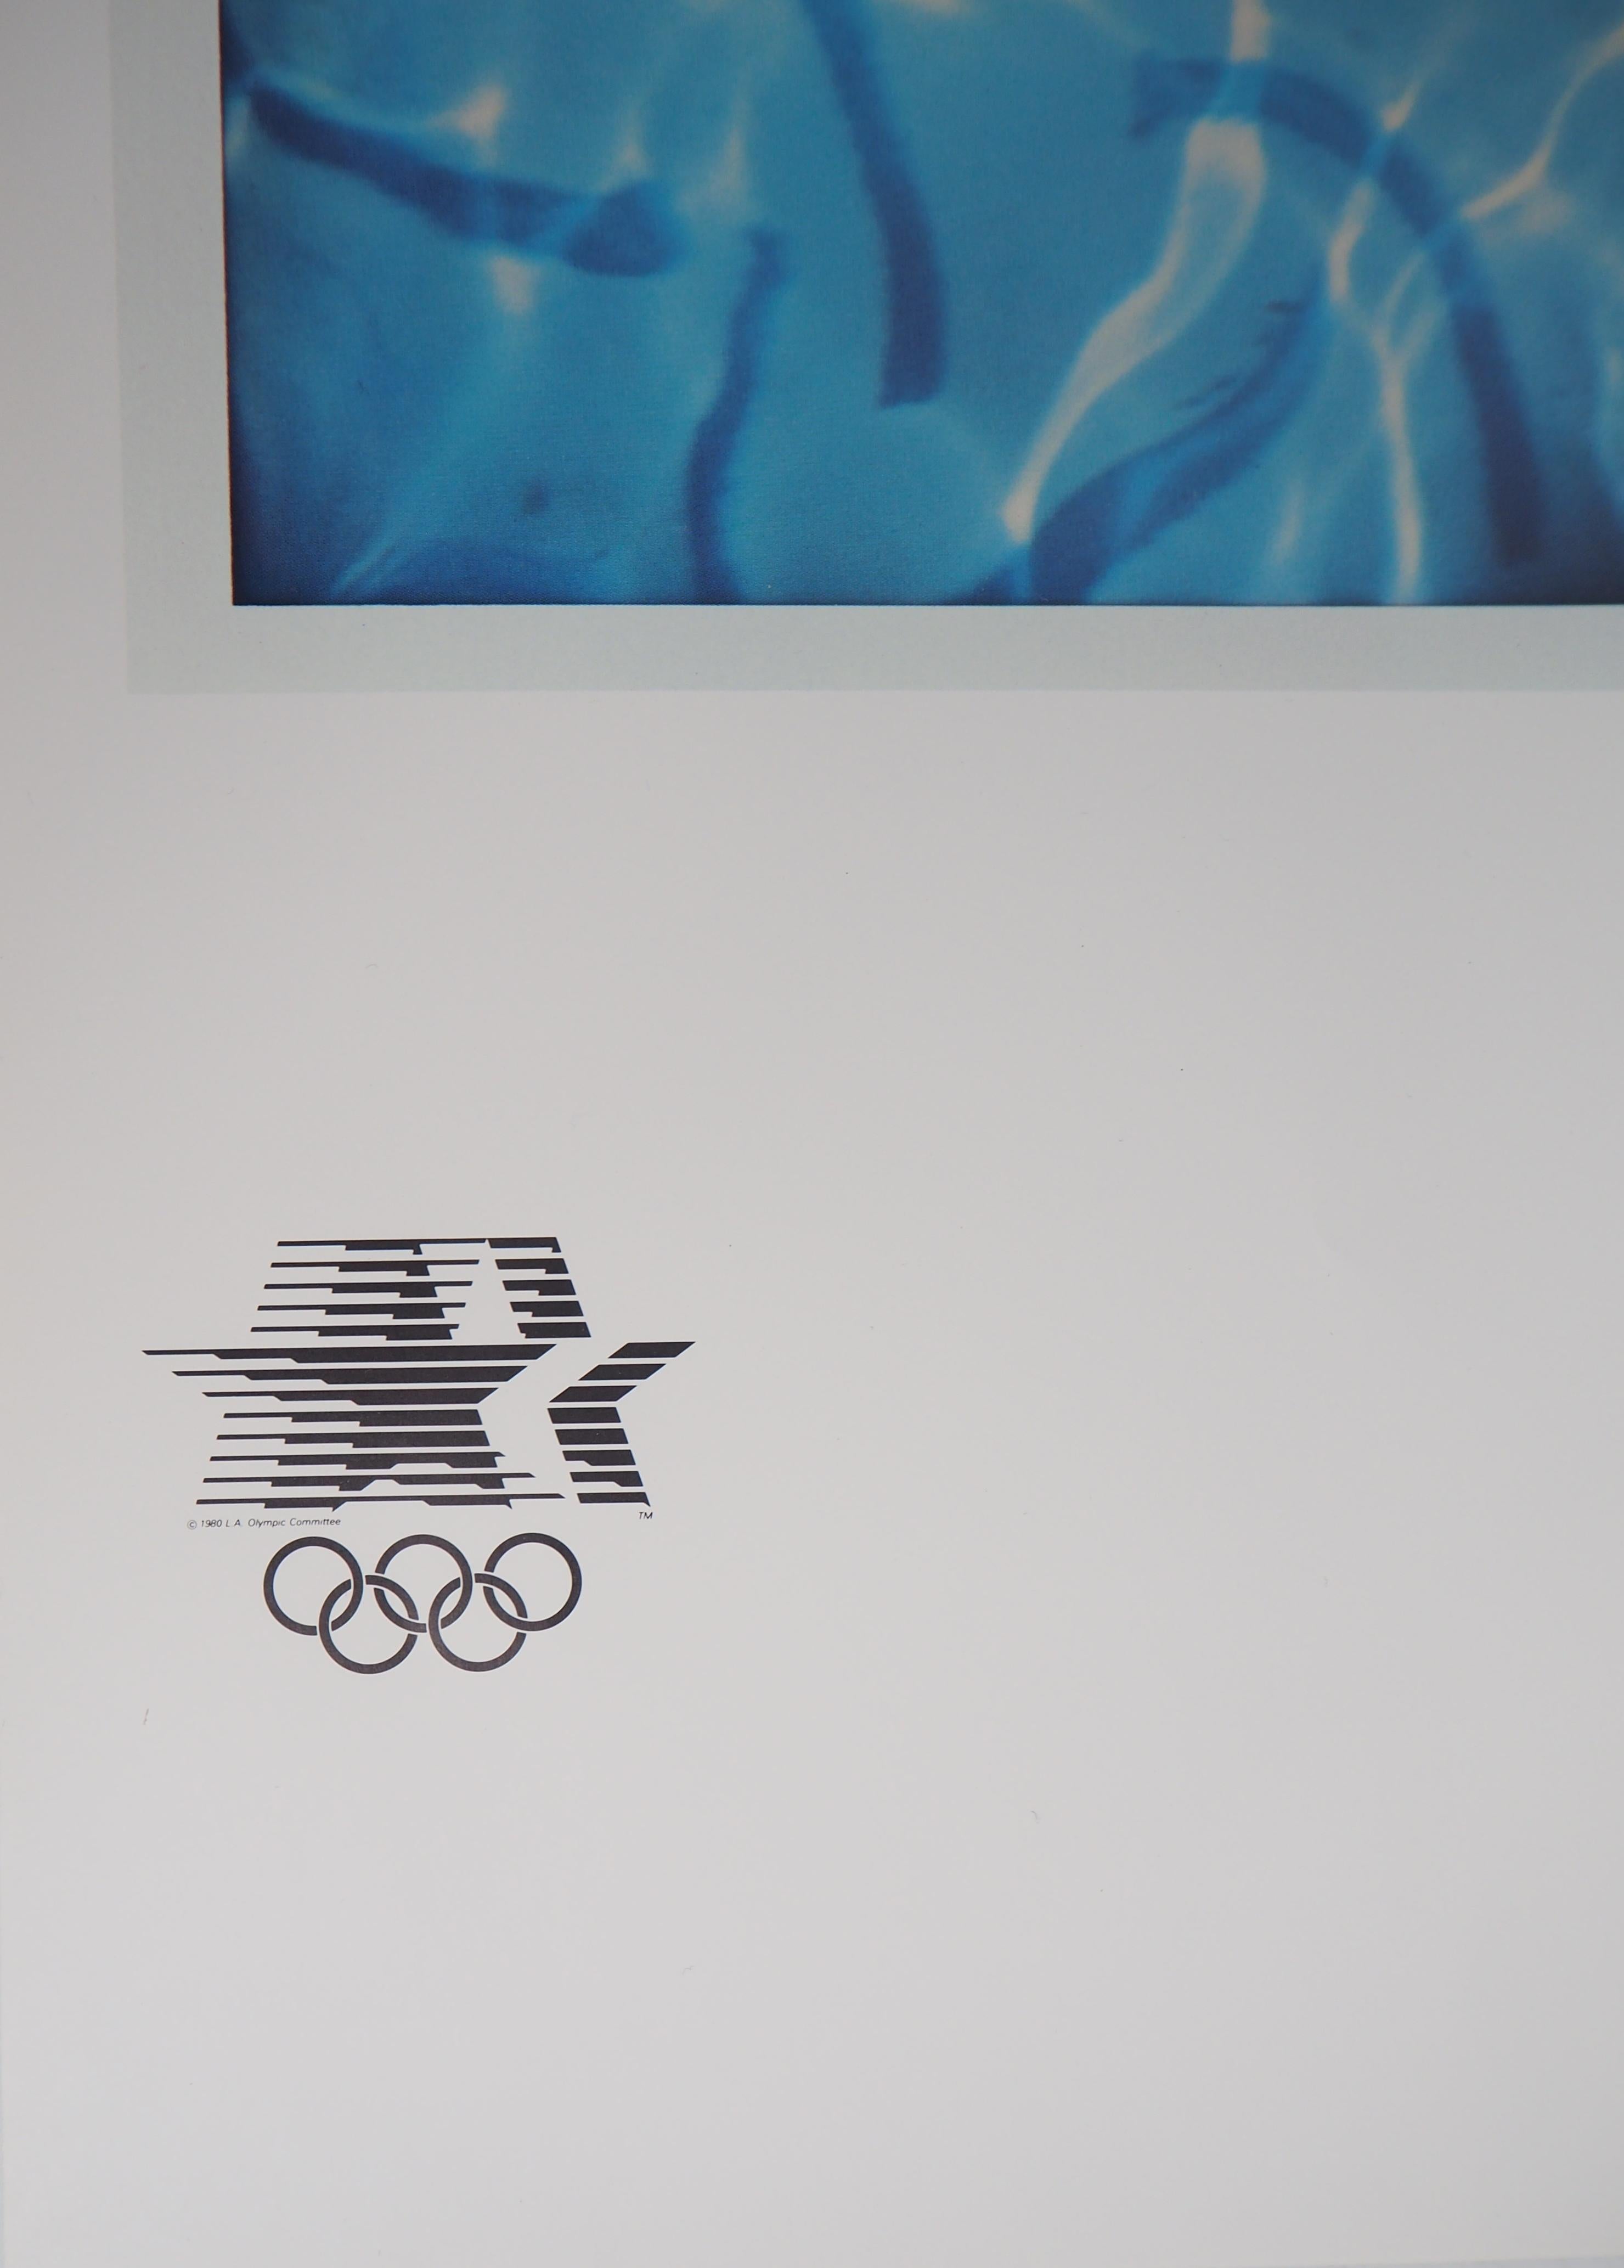 David HOCKNEY
Nageur, plongeur en piscine, 1982

Lithographie offset
Signature imprimée dans la plaque
Sur papier 91 x 61 cm (36 x 24 pouces)
Réalisé pour les Jeux Olympiques de Los Angeles, 1984

RÉFÉRENCES : Catalogue raisonné Hockney Posters /